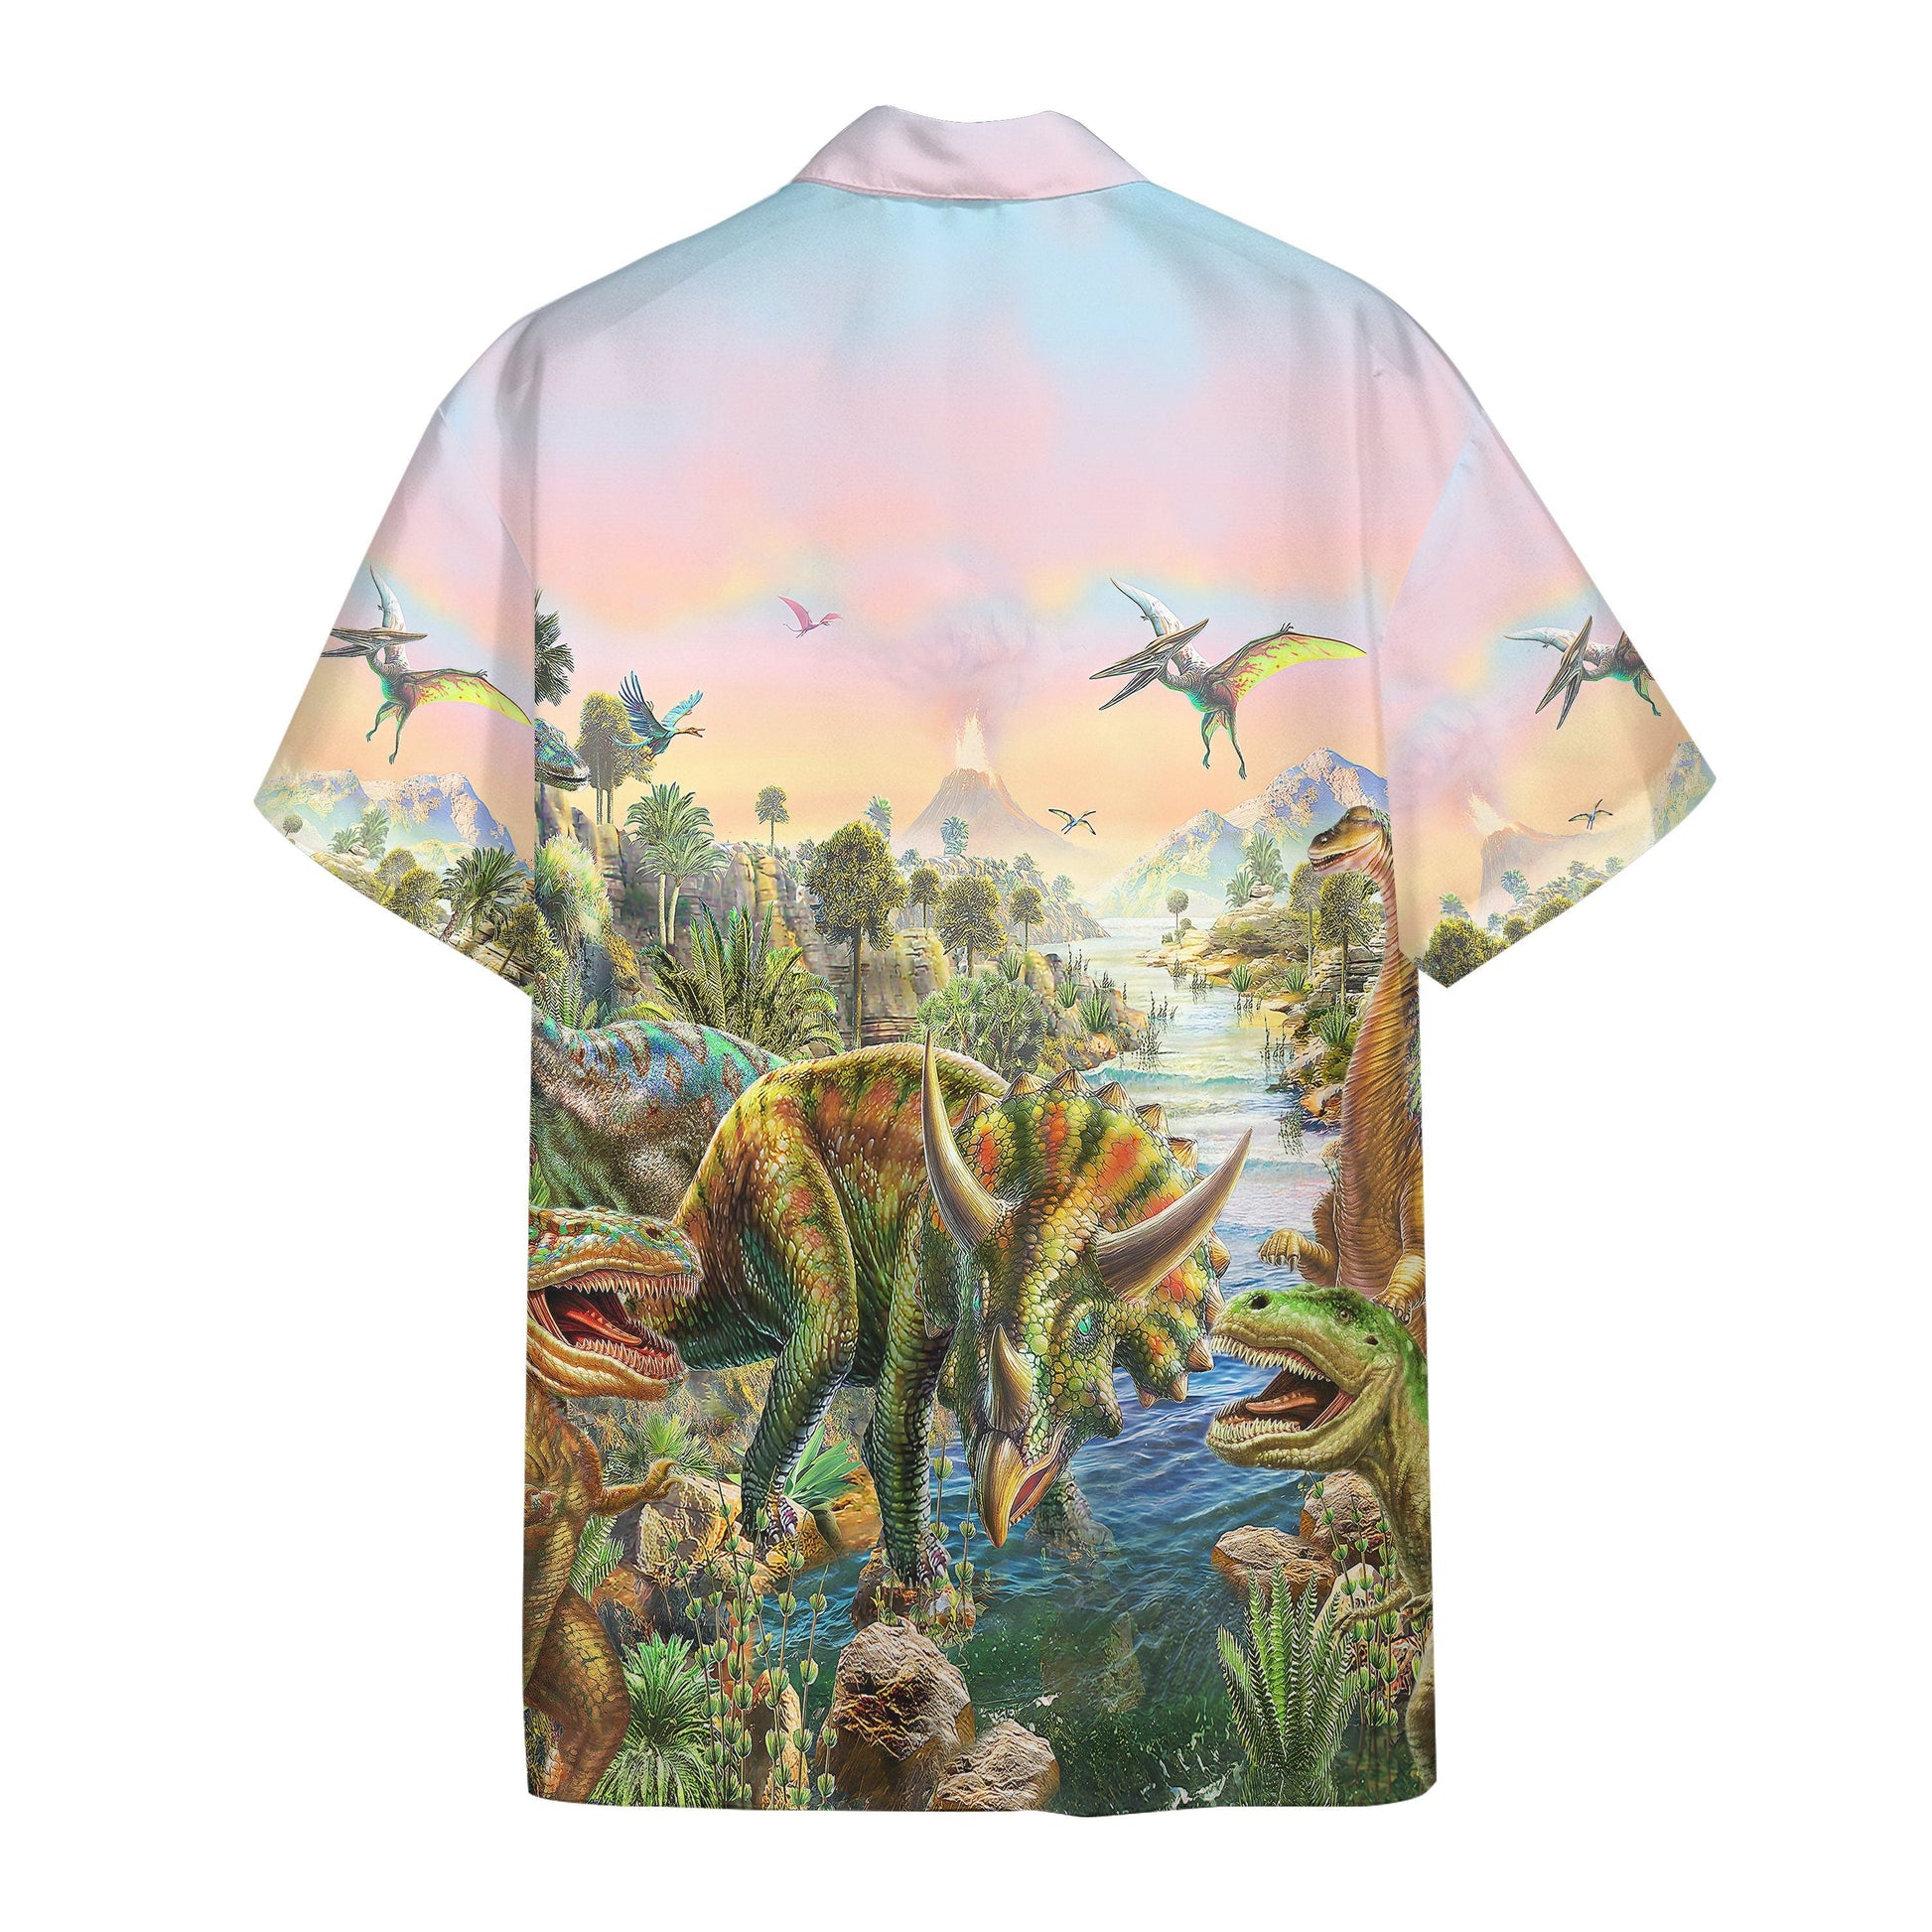 Gearhumans 3D World of Dinosaurs Custom Short Sleeve Shirt GS17062124 Hawai Shirt 